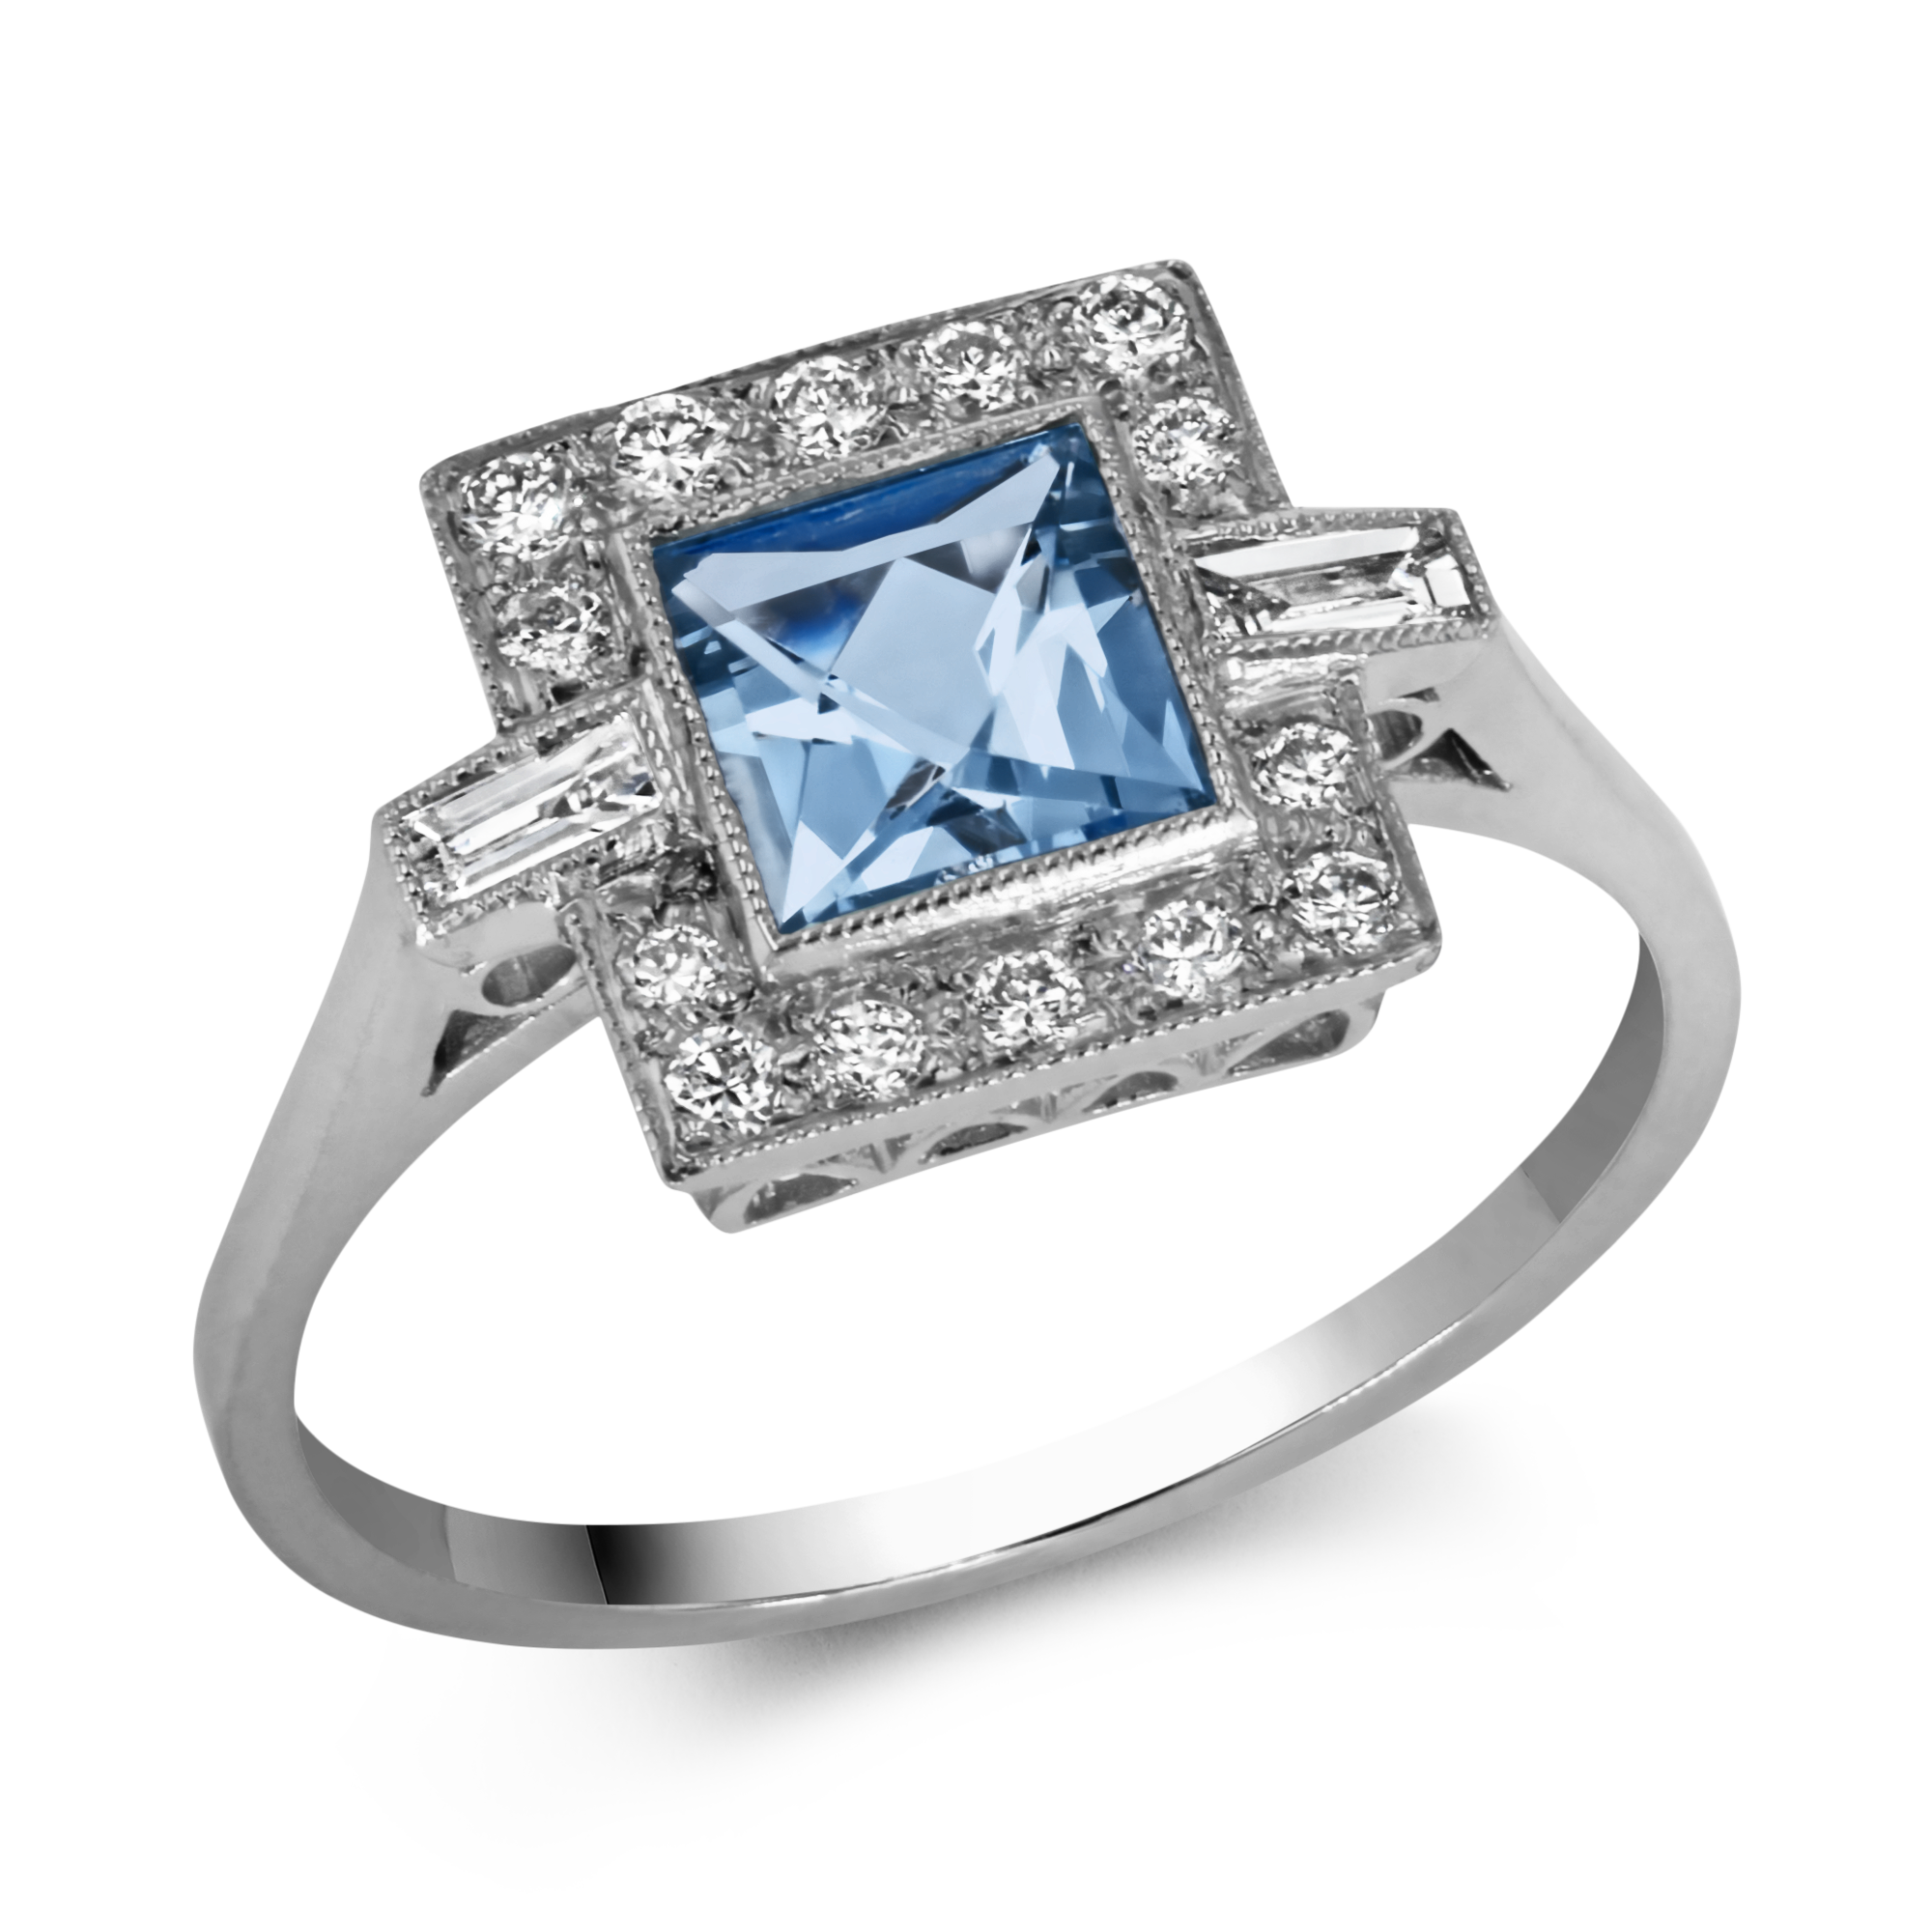 Art Deco Inspired 0.70ct Aquamarine and Diamond Cluster Ring Square Cut, Millegrain Set_1